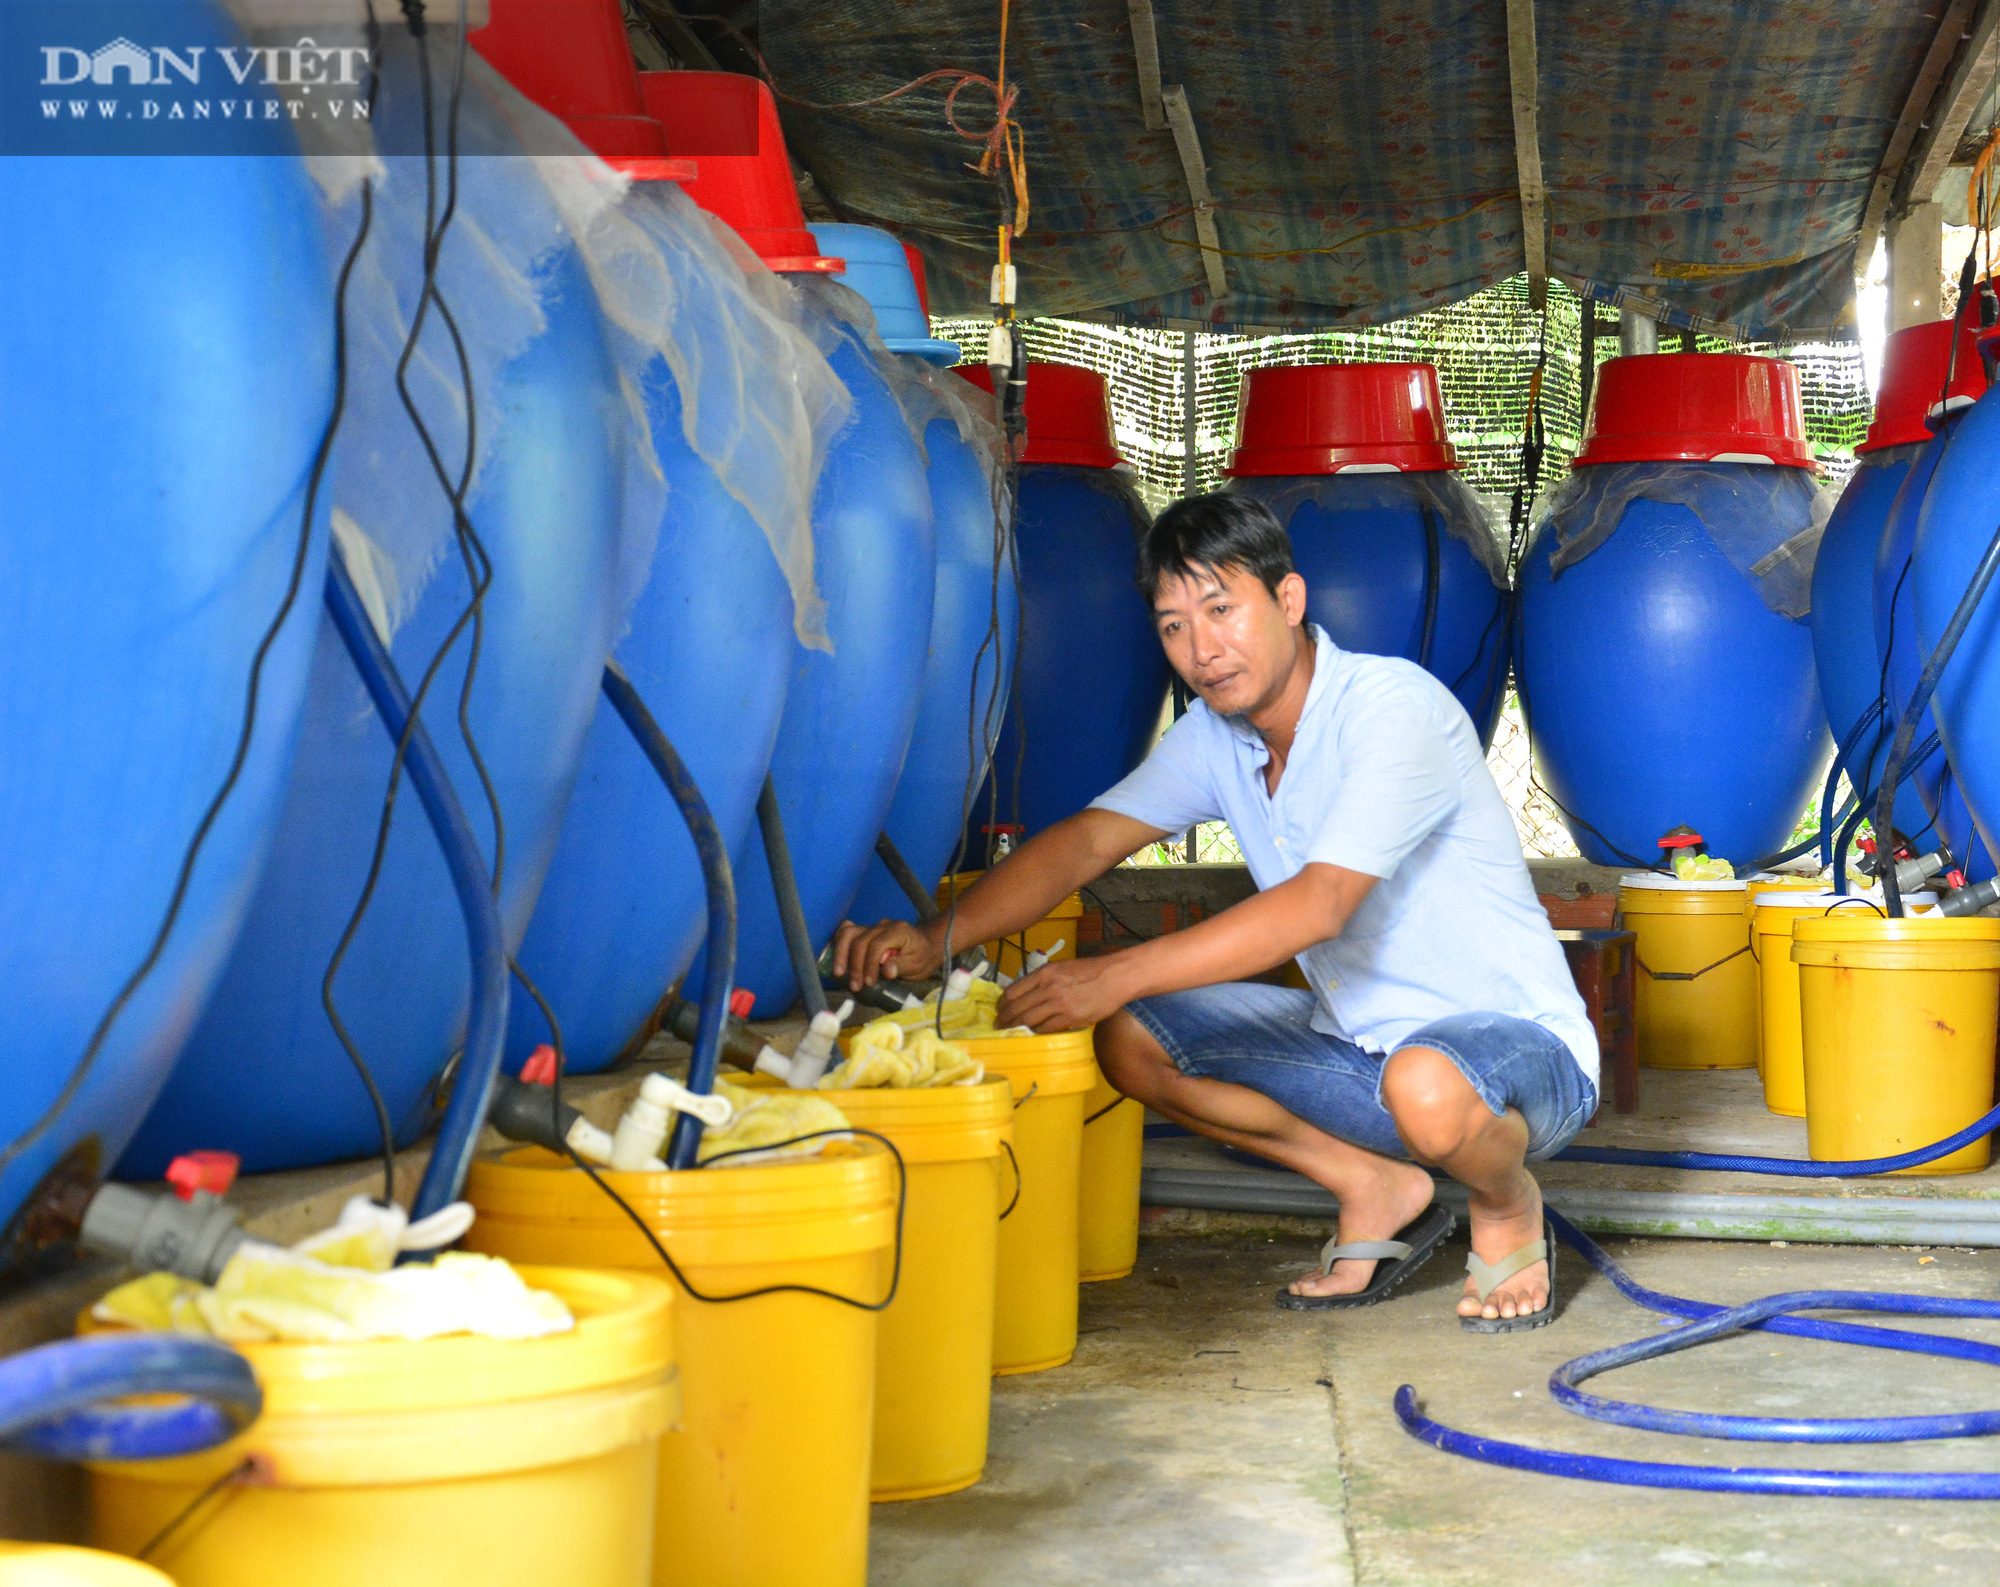 Kiên Giang: Chàng trai với bí quyết làm nước mắm đồng thơm ngon từ các loại cá đặc sản - Ảnh 2.